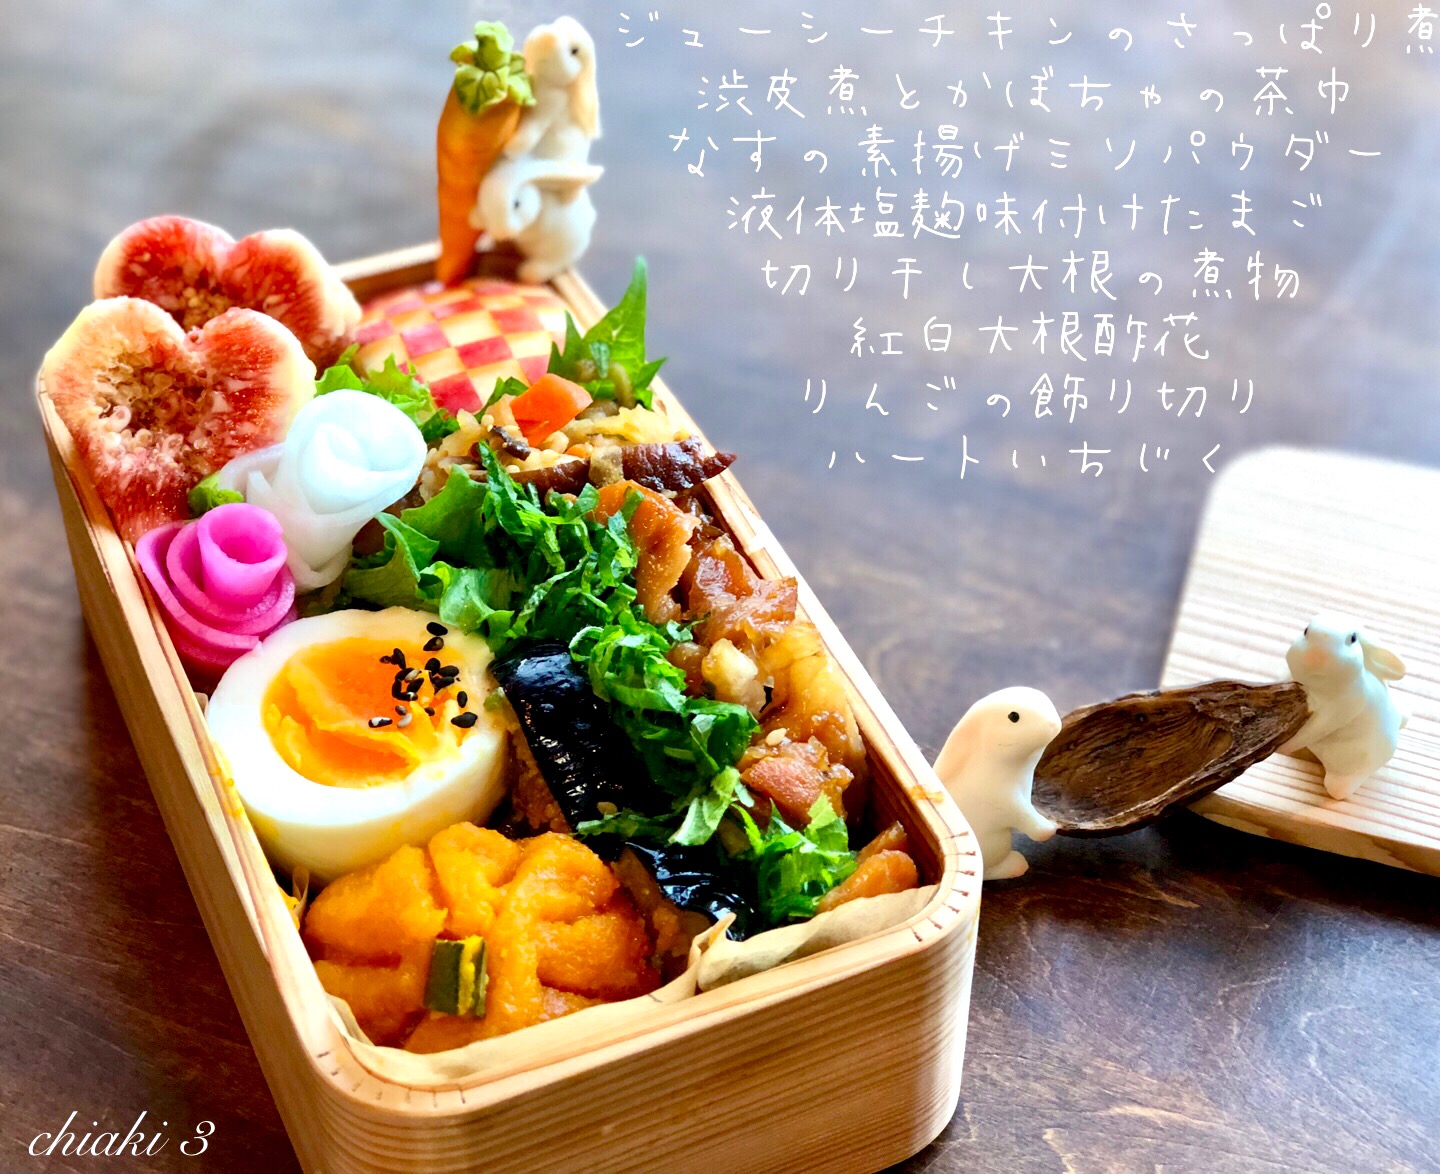 桜央里さんの料理 調味料三つで簡単美味しい?ジューシーチキンのさっぱり煮?